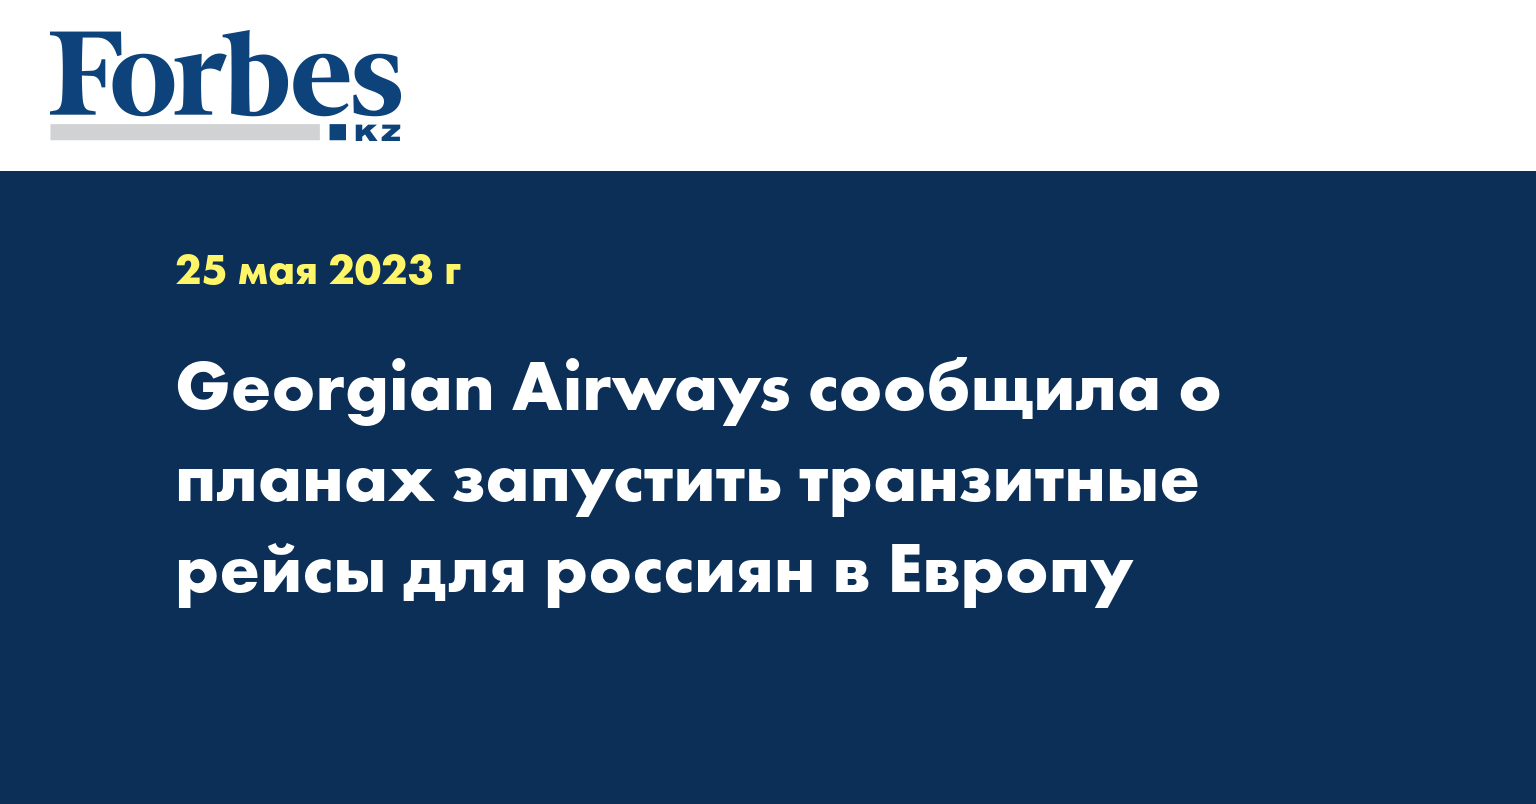 Georgian Airways сообщила о планах запустить транзитные рейсы для россиян в Европу